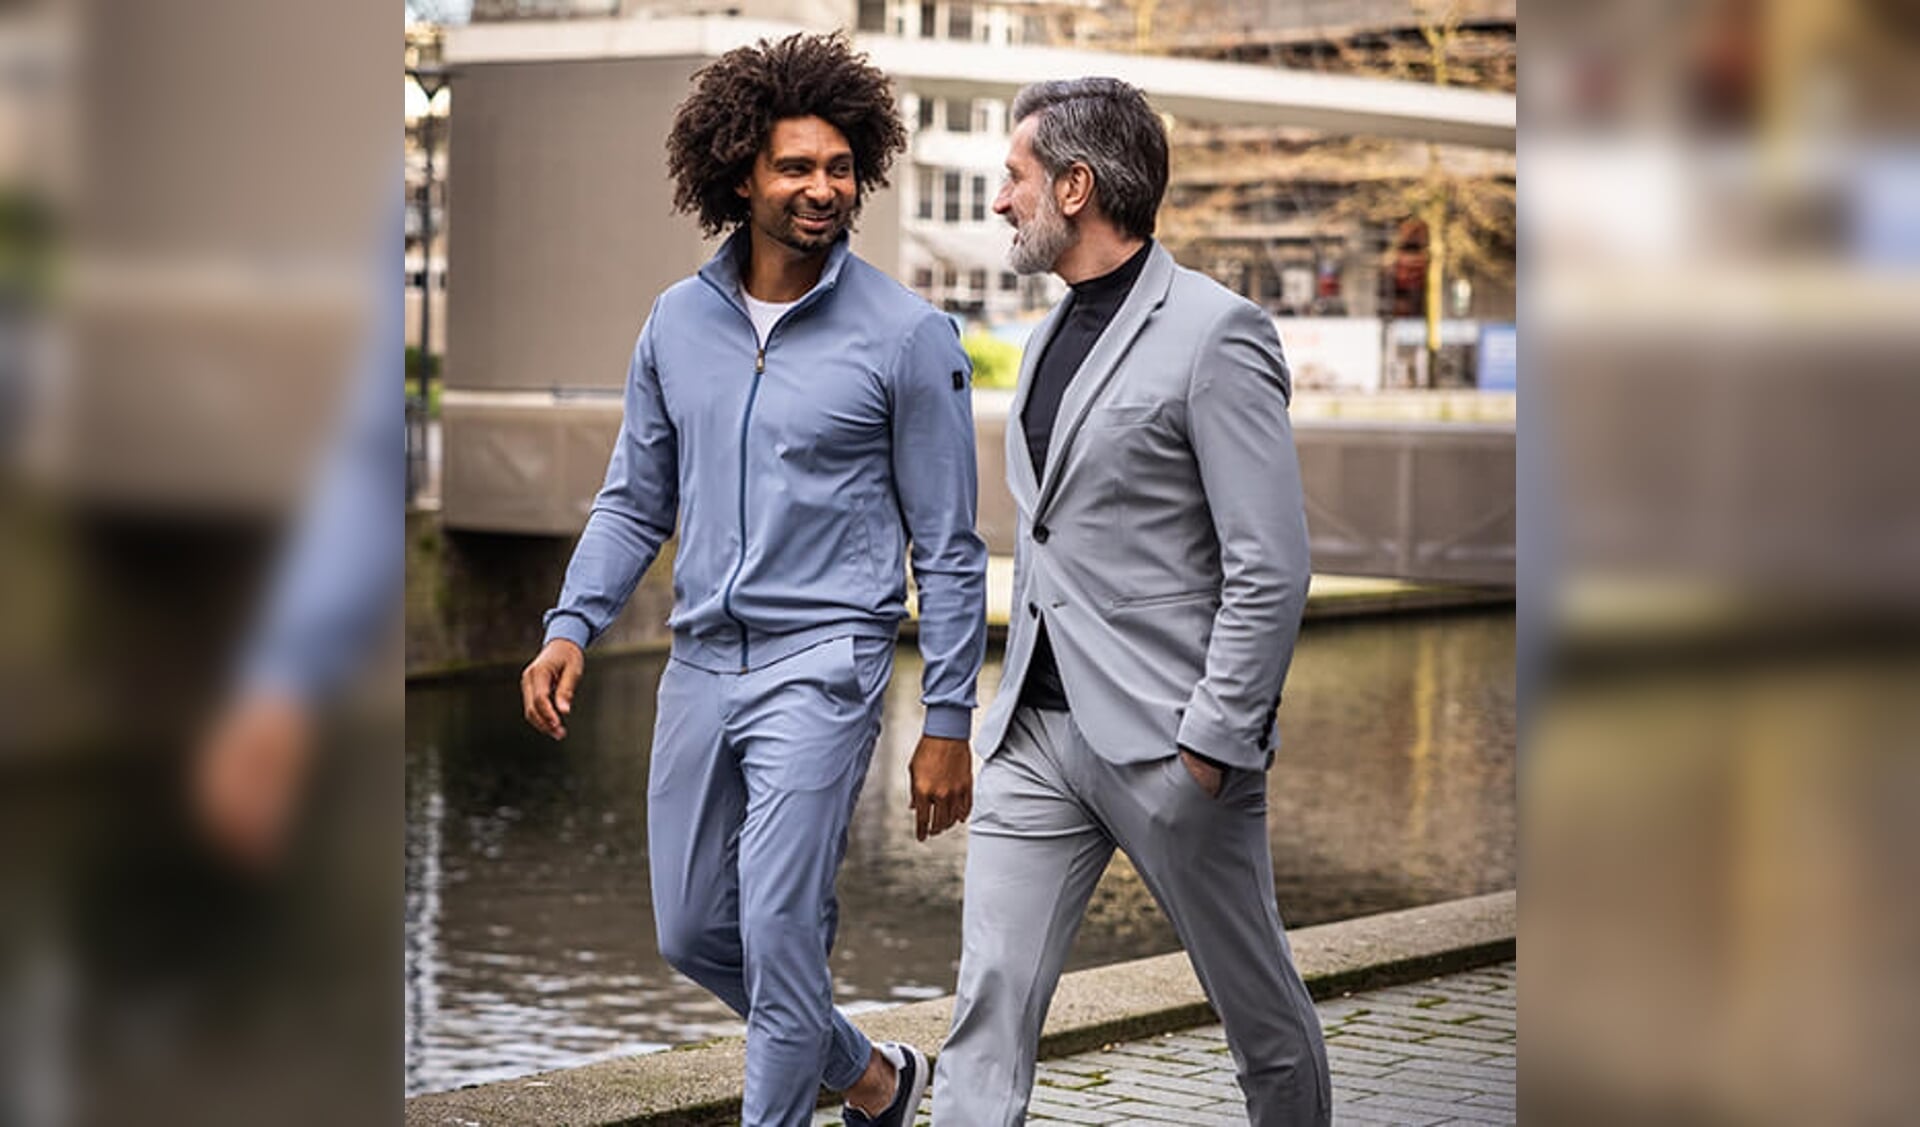 Neycko is het eerste Nederlandse merk met een kledinglijn voor mannen die volledig bestaat uit travel stof. 